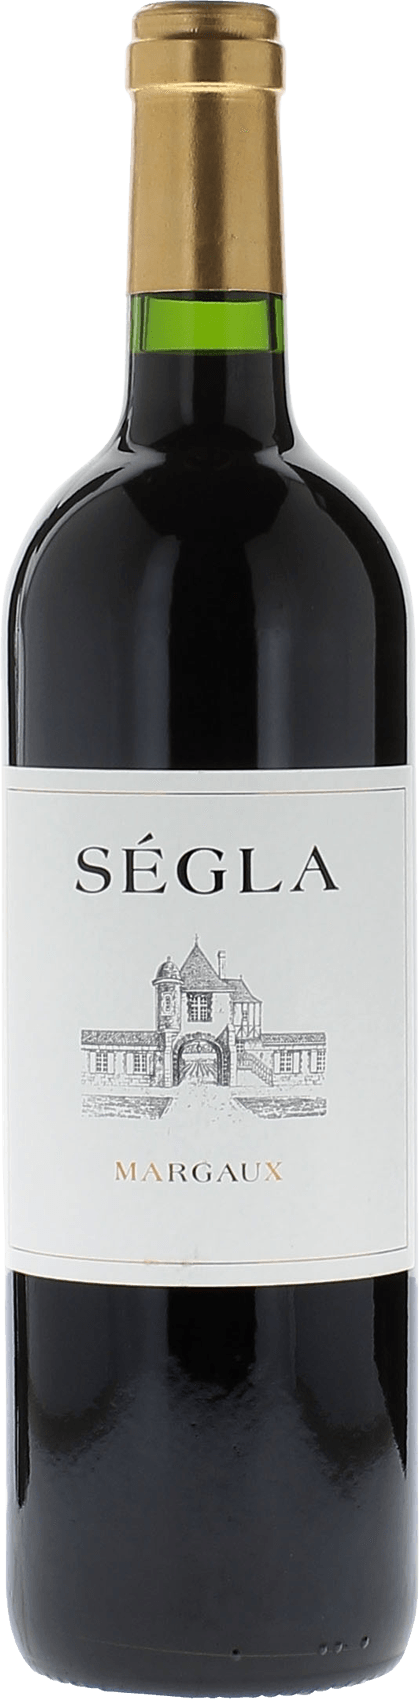 Segla 1996  Margaux, Bordeaux rouge